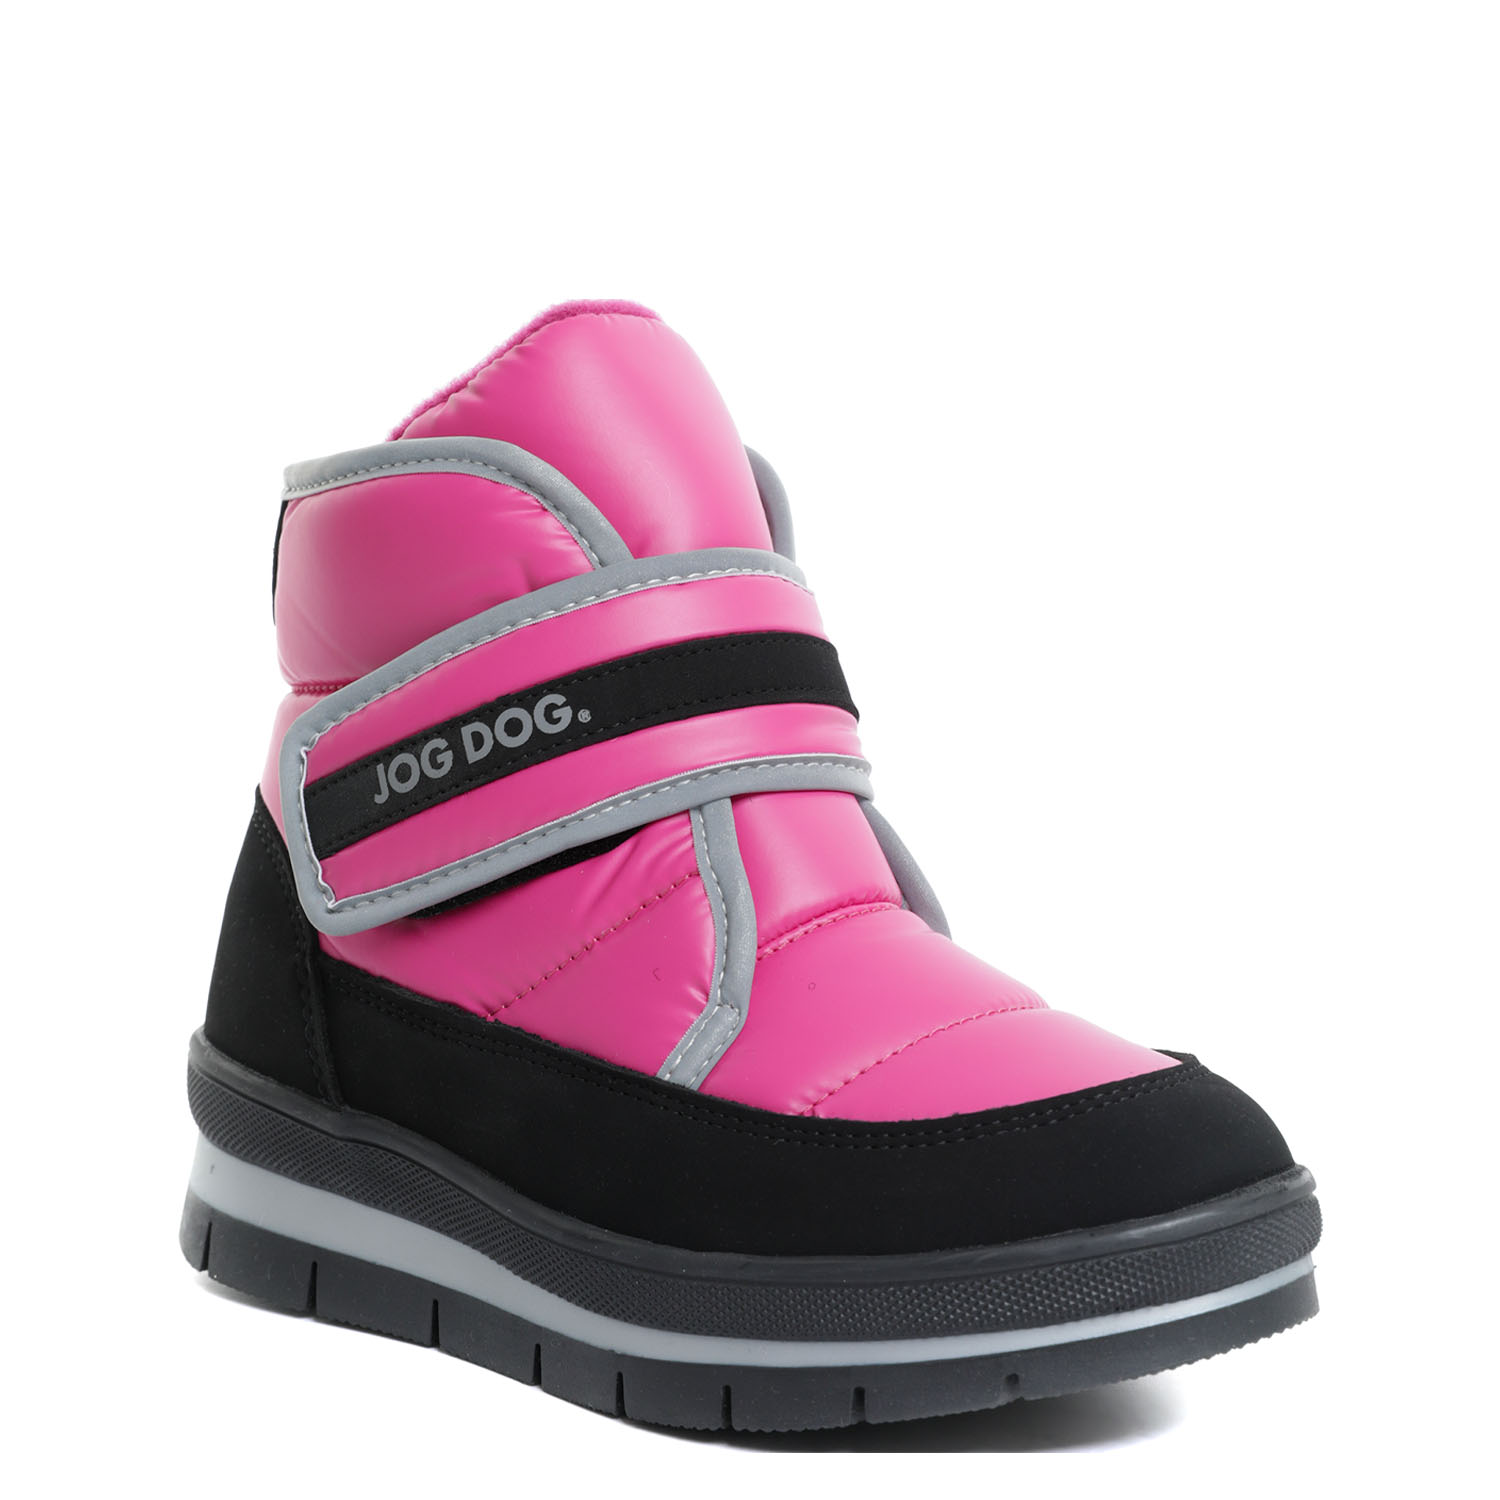 Ботинки детские Jog dog Sonar Black/Pink